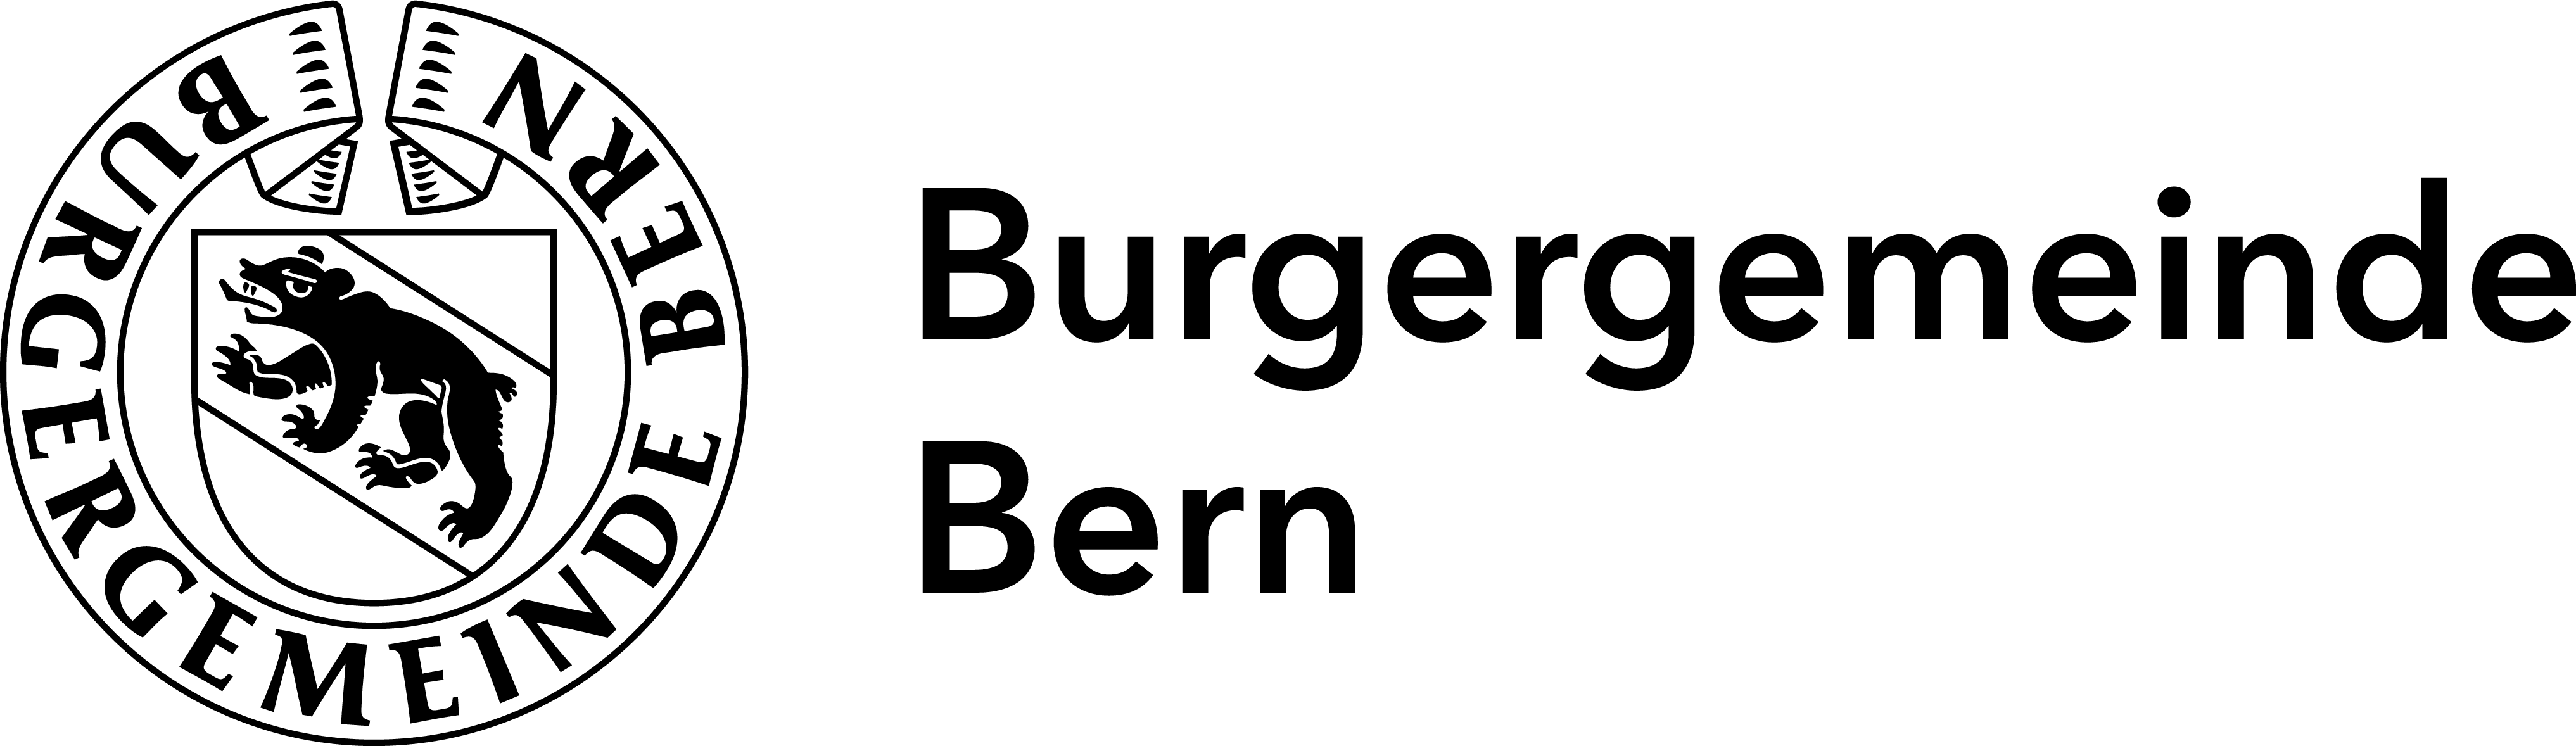 Burgergemeinde_Logo